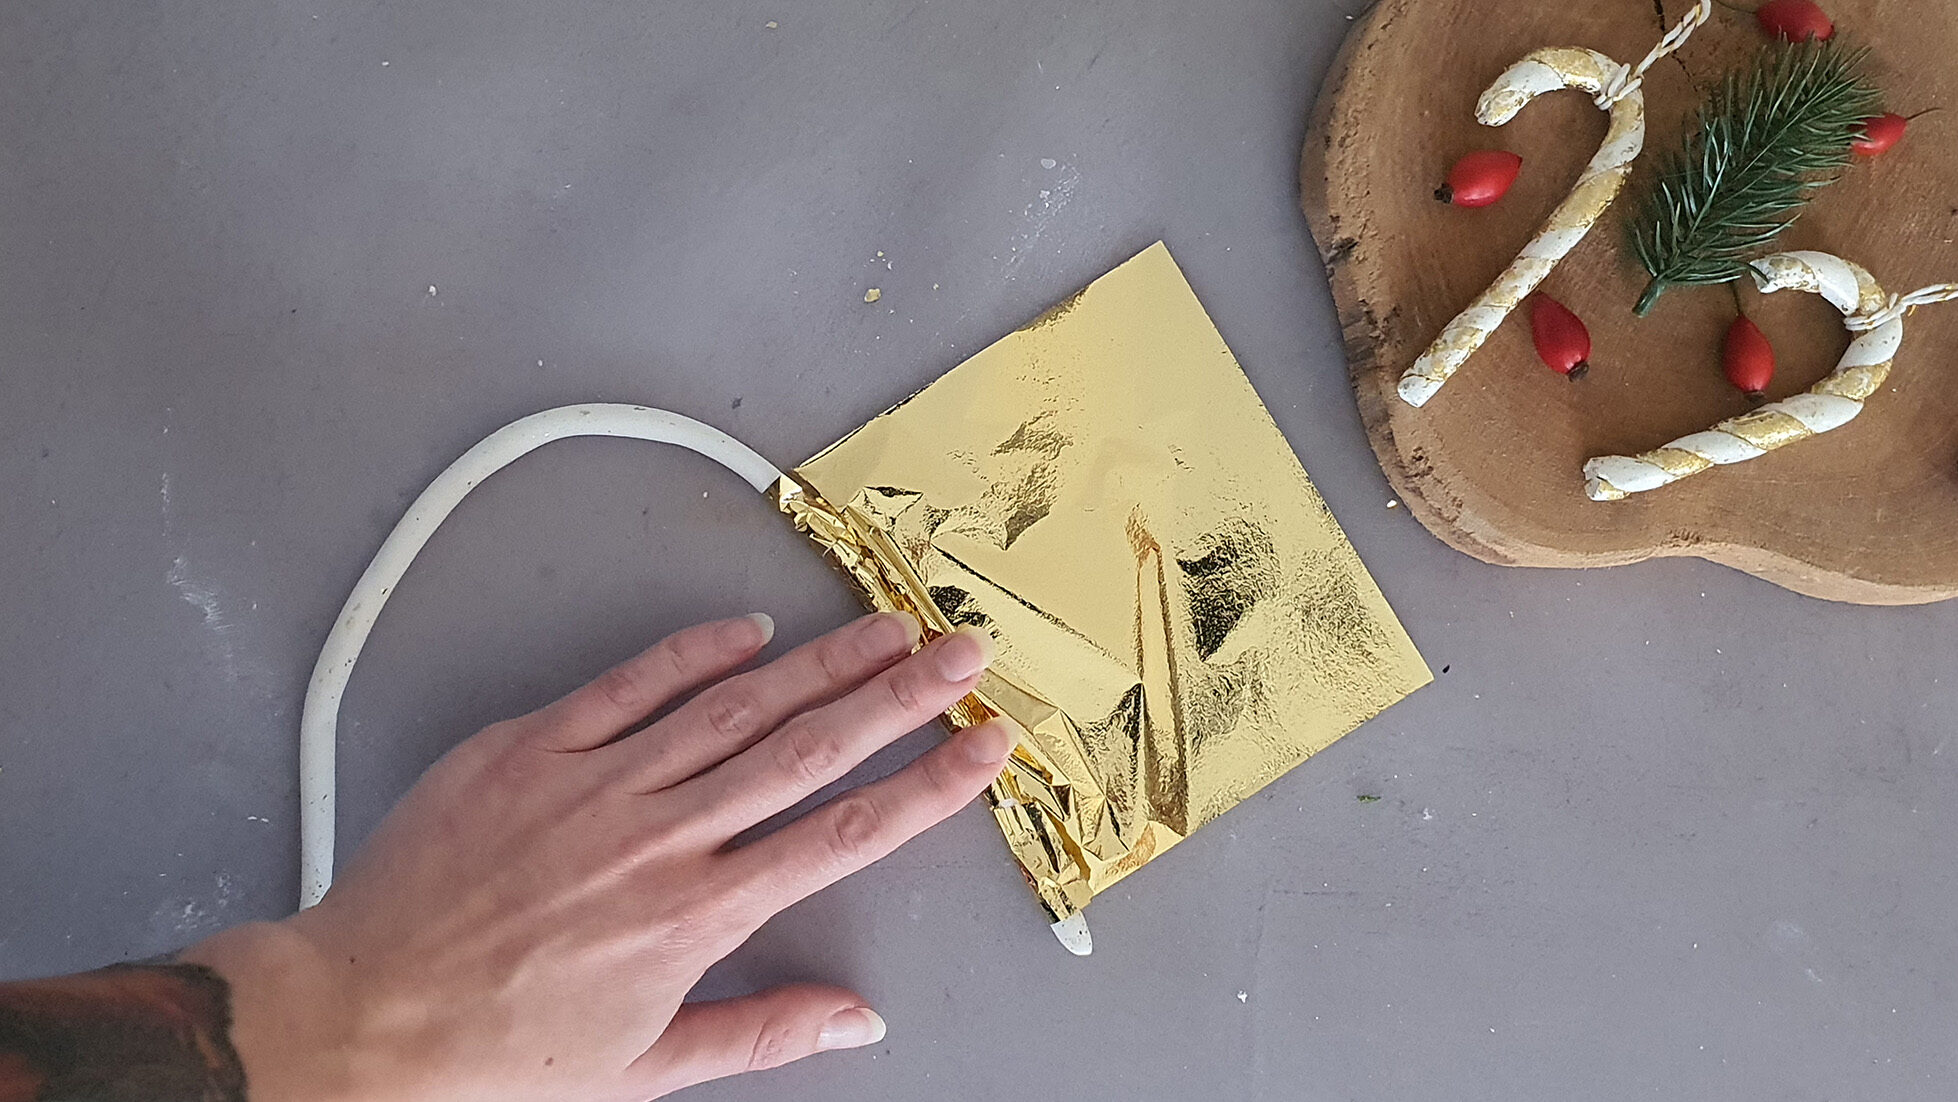 DIY Christbaumschmuck Schritt 2: Blattgold um die lufttrocknende Modelliermasse legen und festrollen